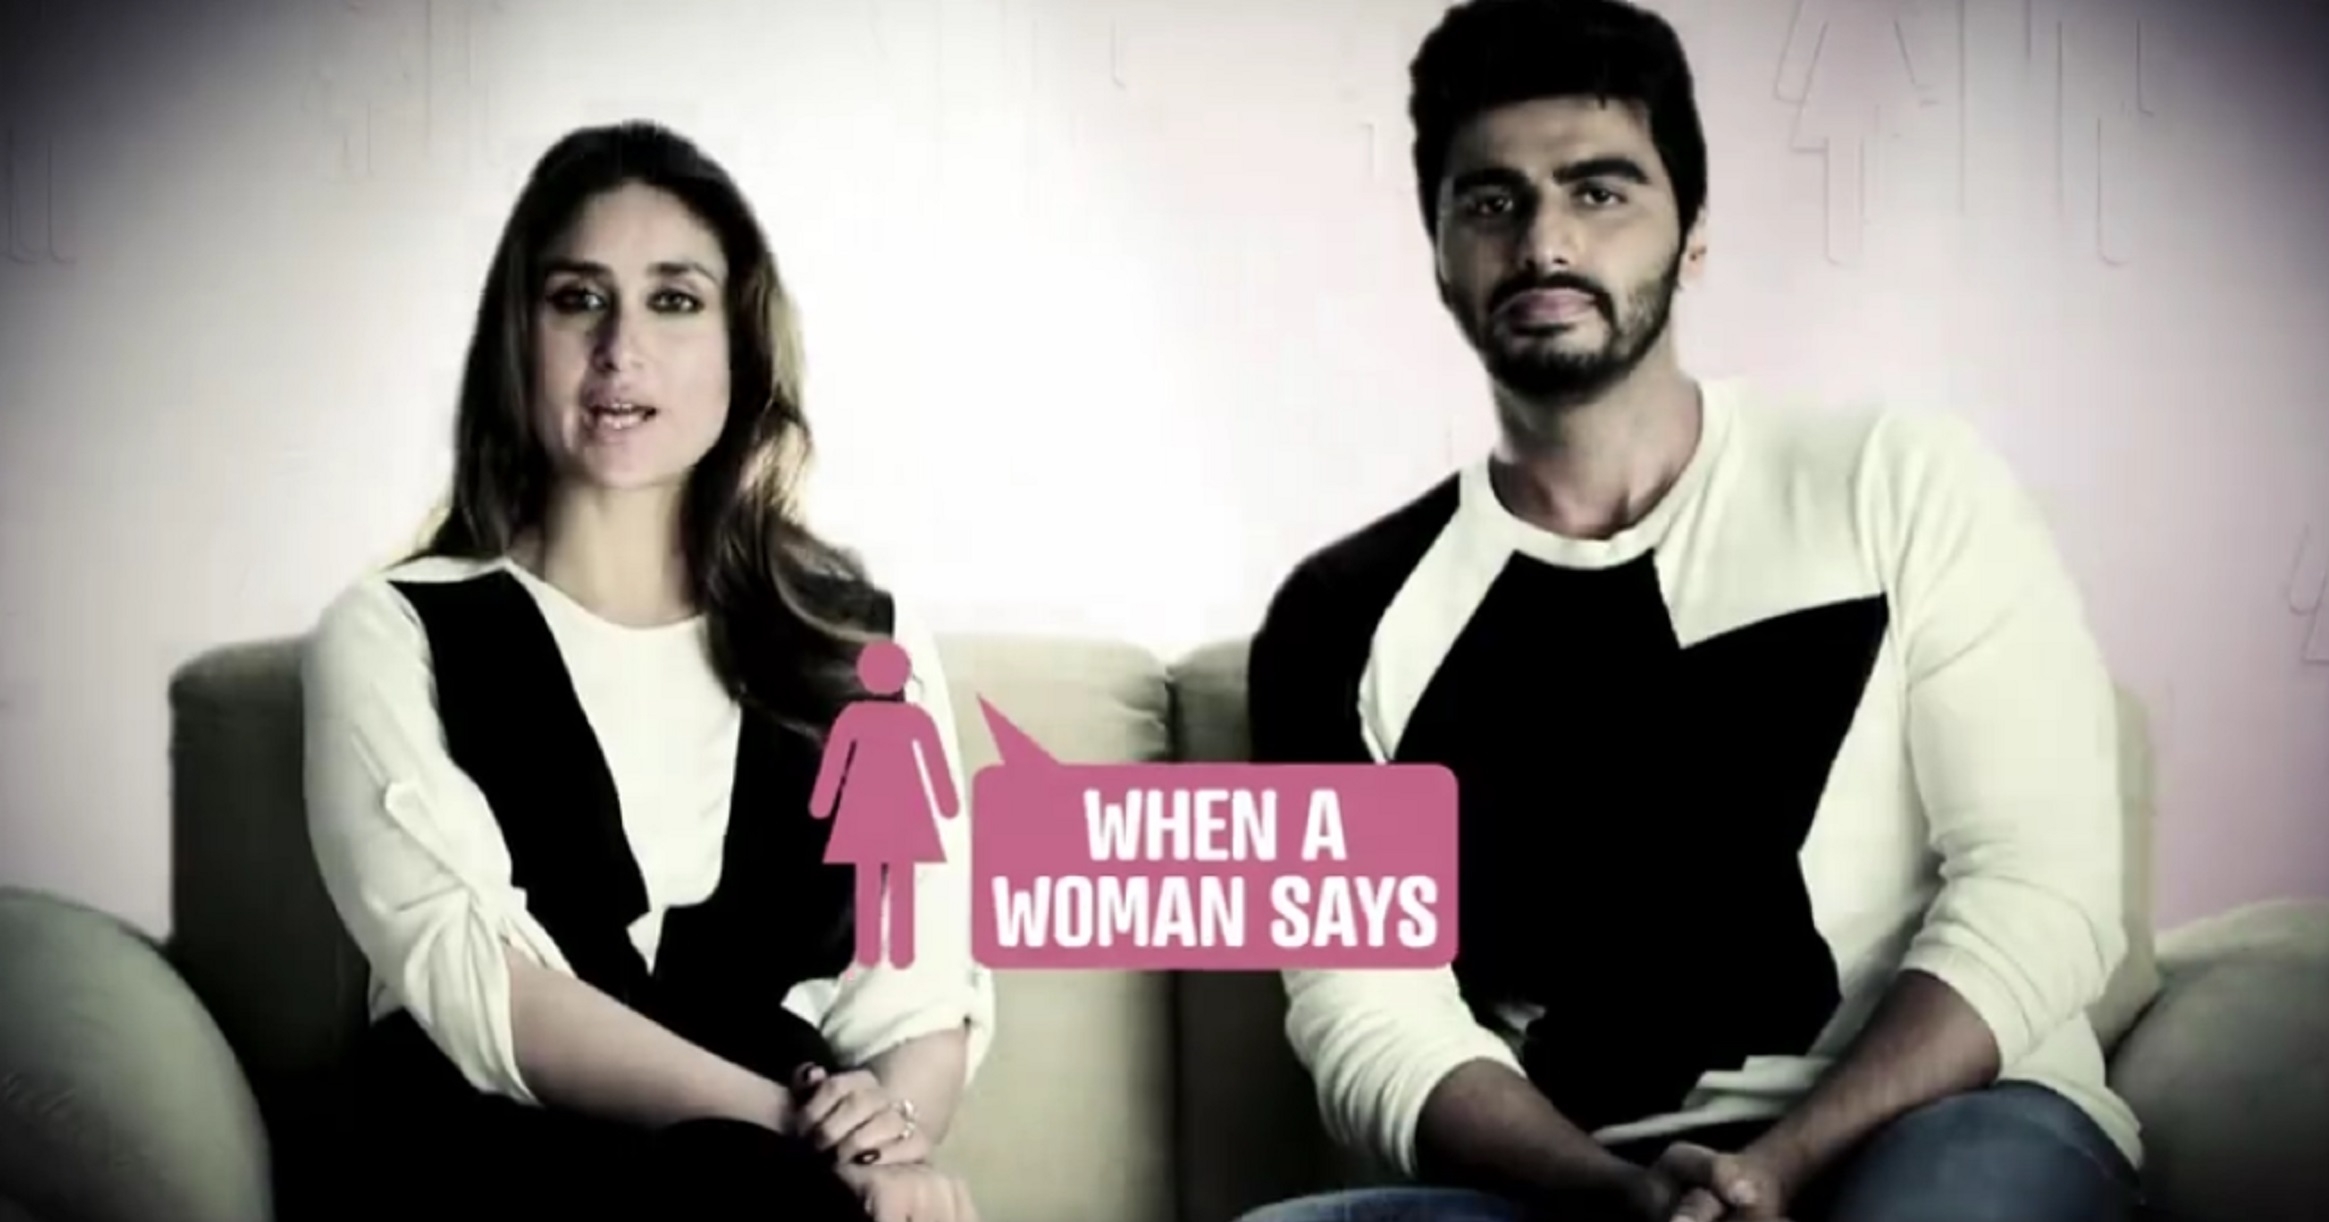 Arjun Kapoor Kareena Kapoor Take A Dig At Gender Stereotypes And Society